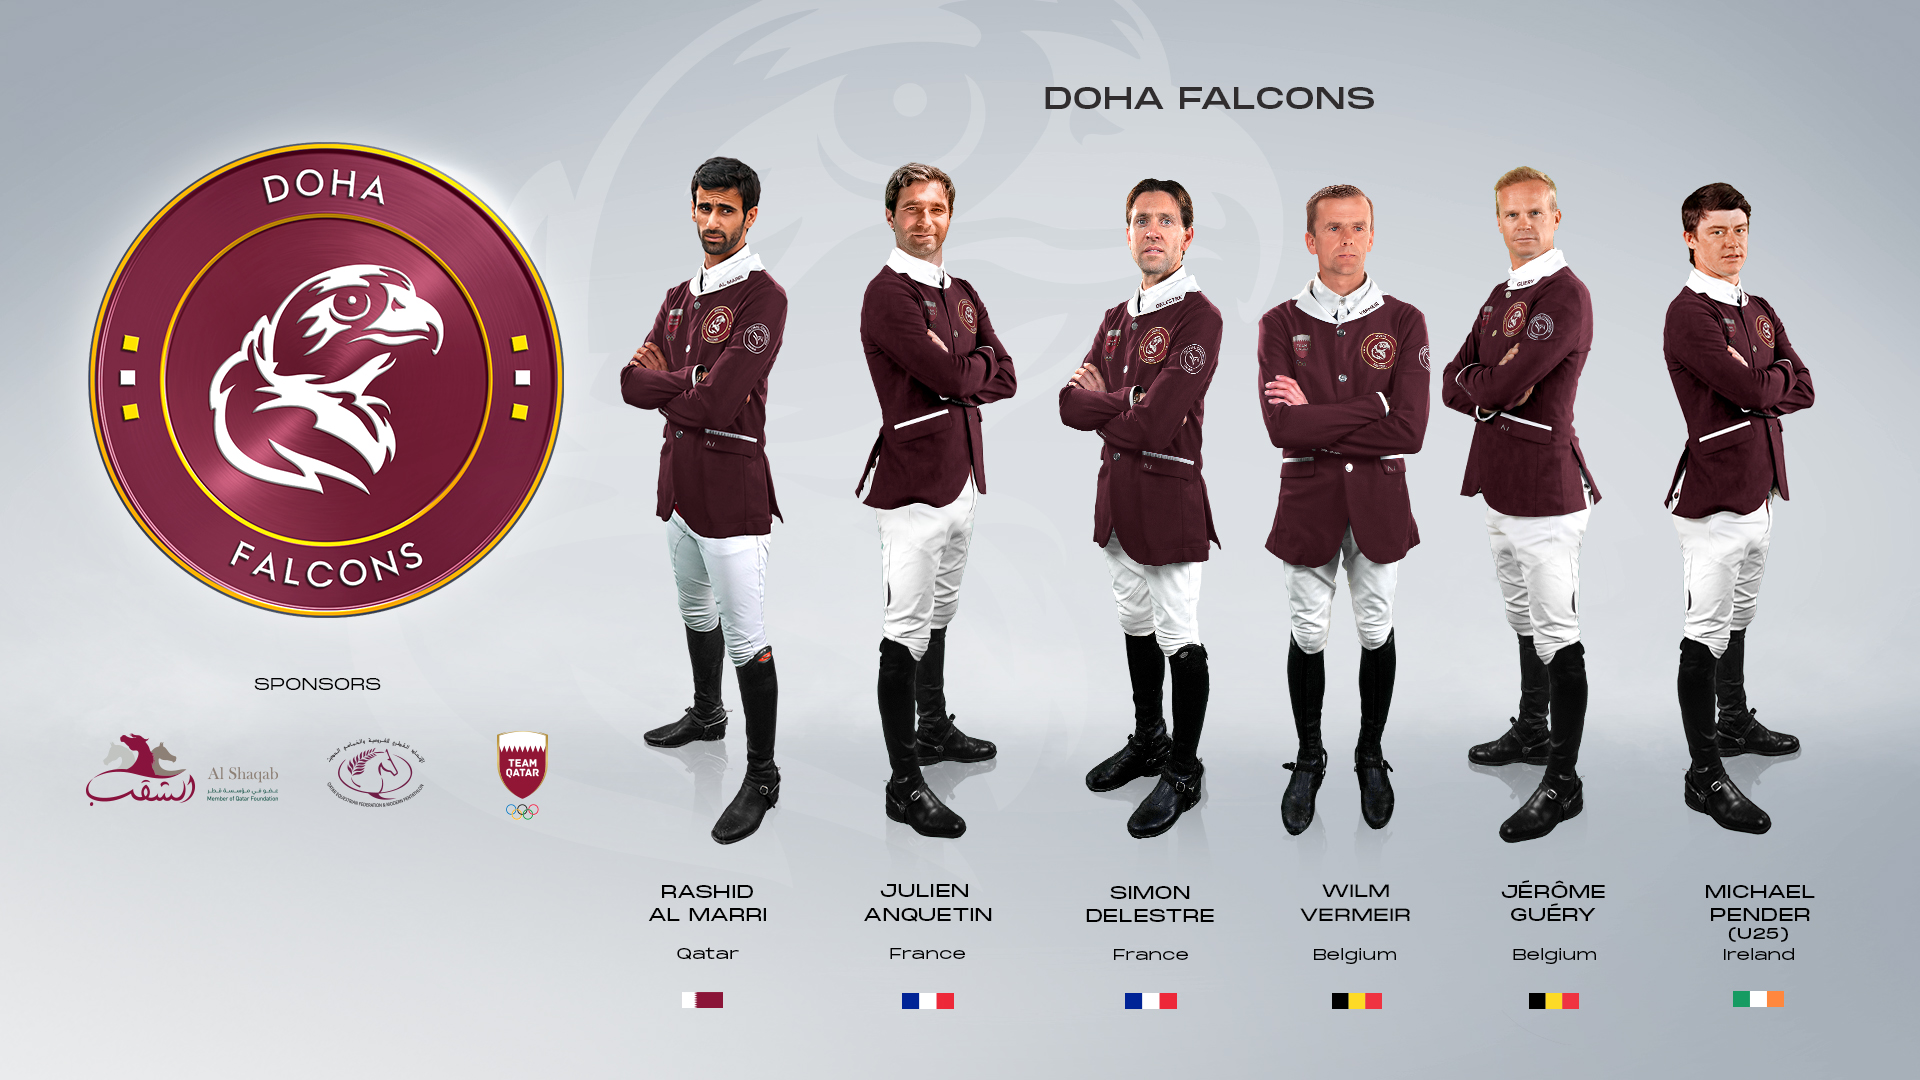 Vermeir maakt rentree in GCL en vergezelt Guery bij terugkerende Doha Falcons